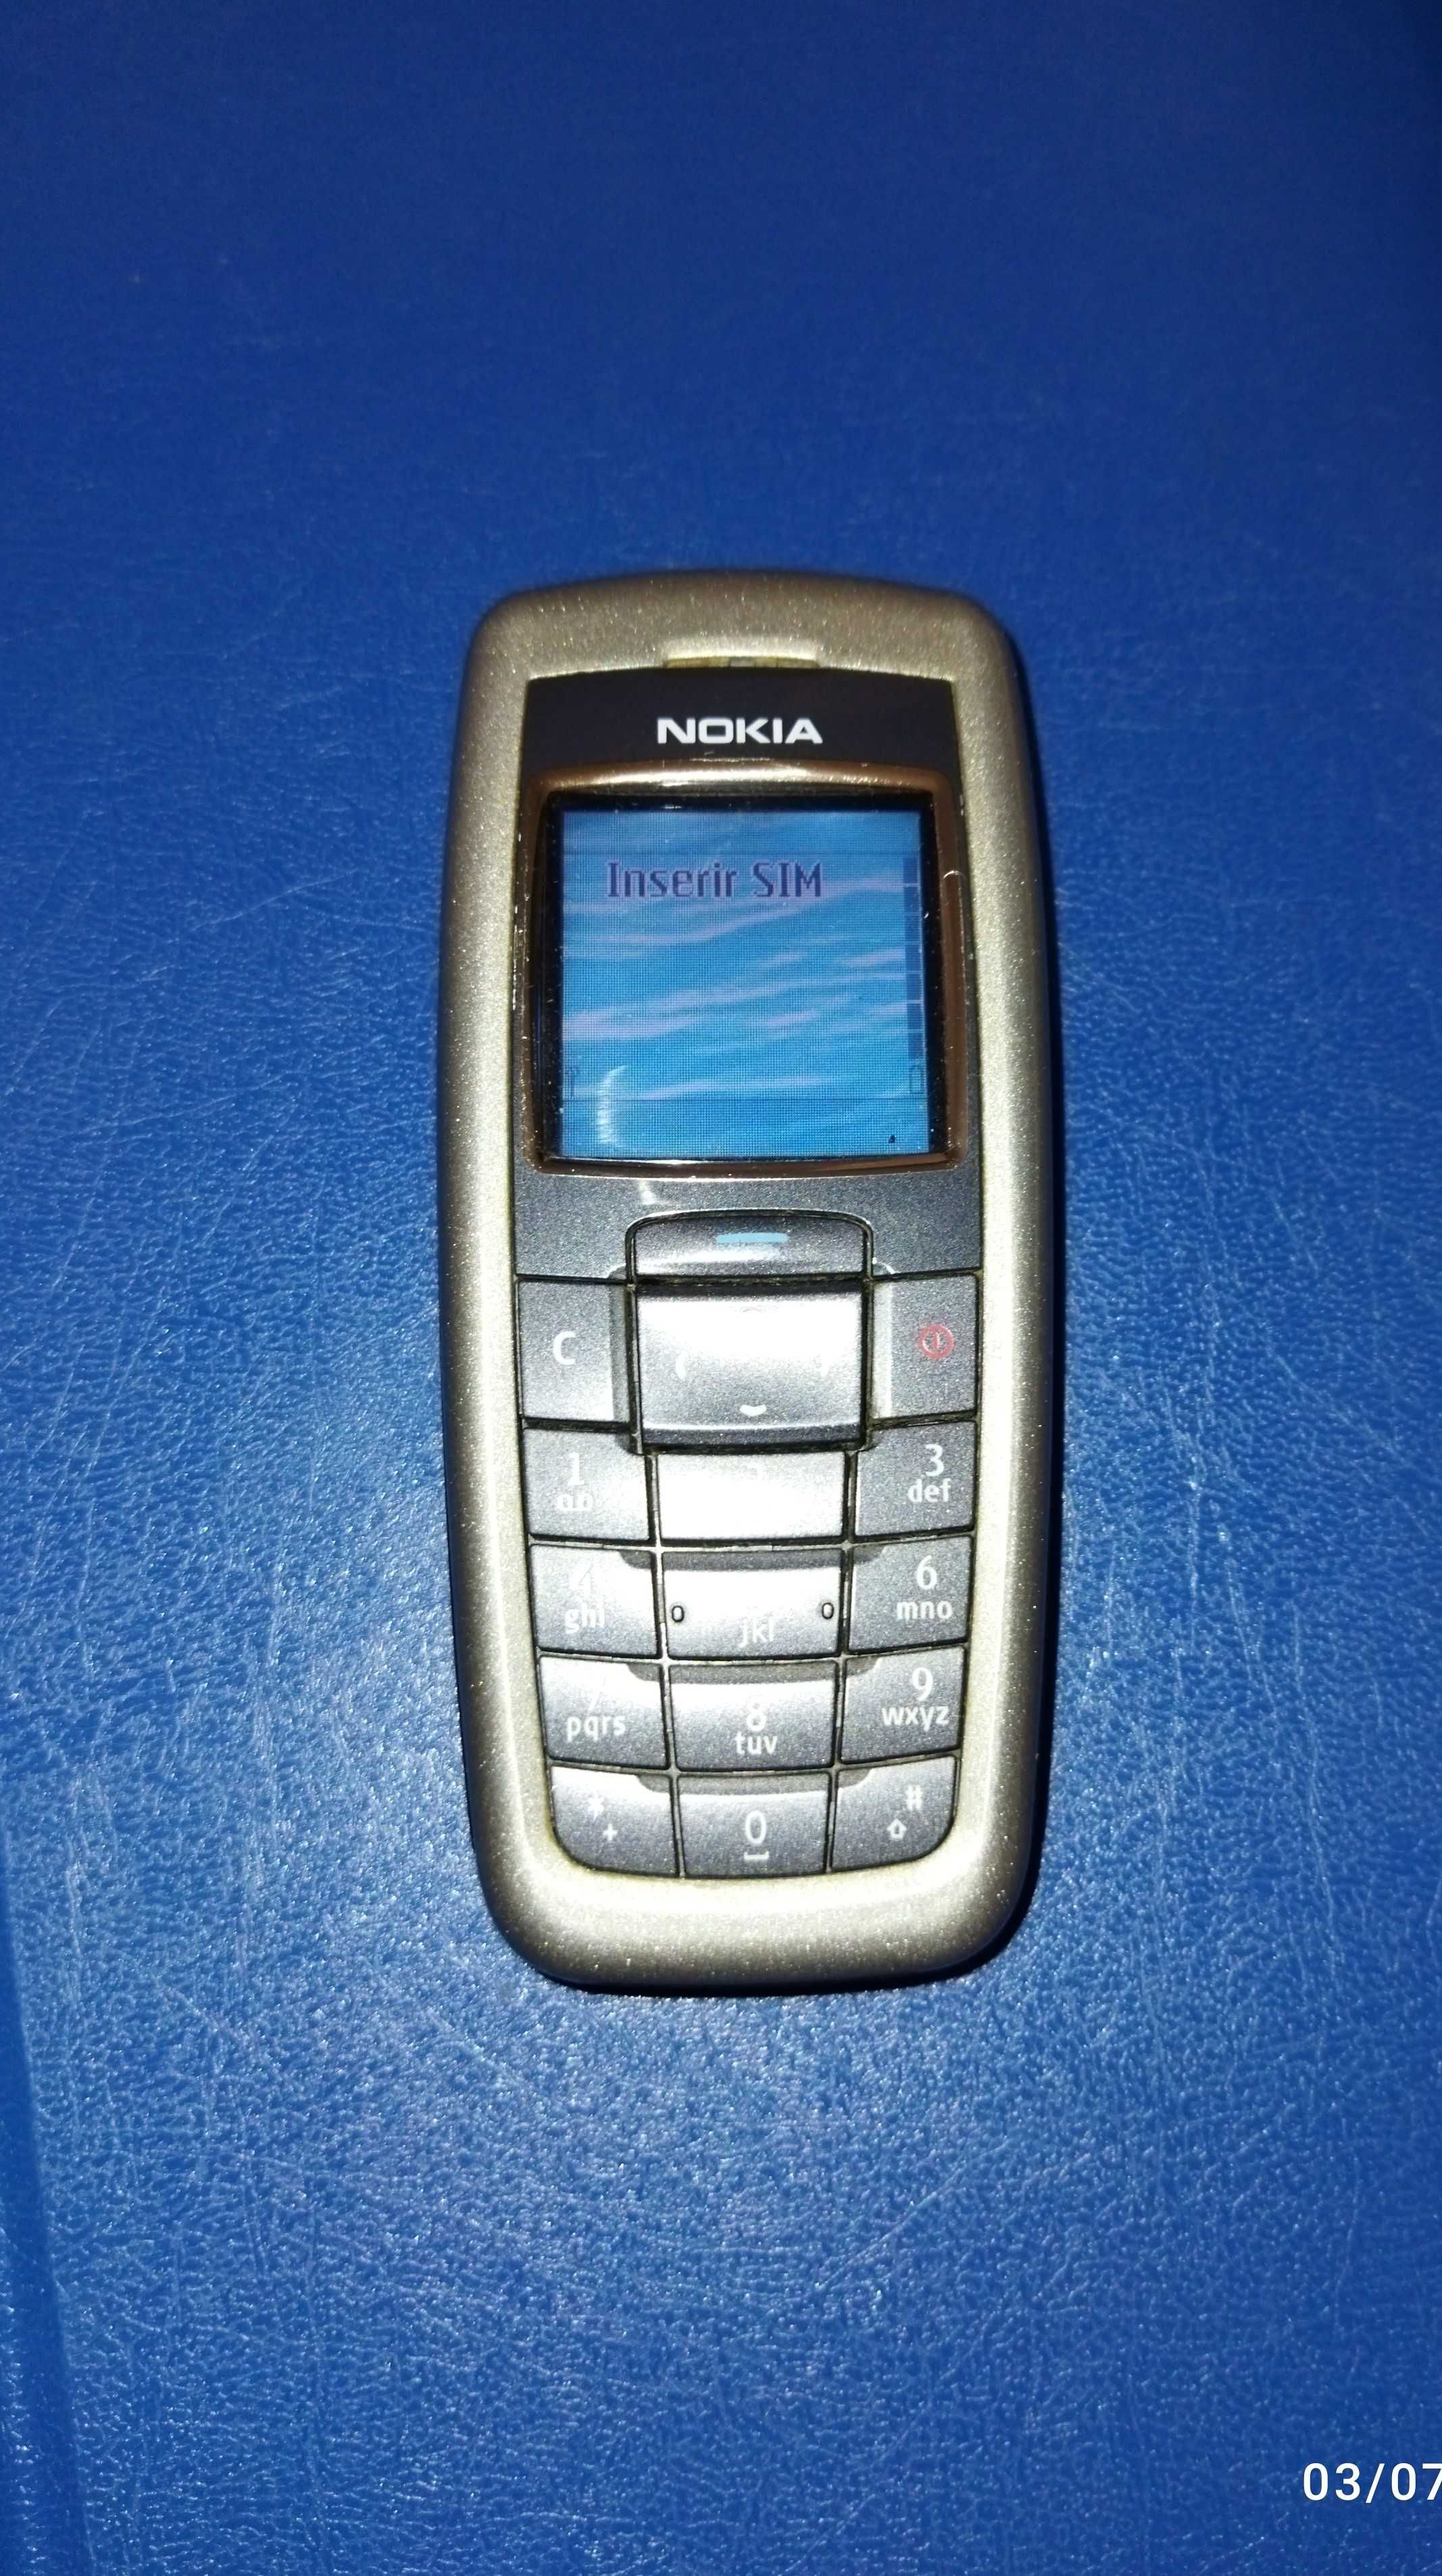 Telemóvel Nokia e Samsung para peças